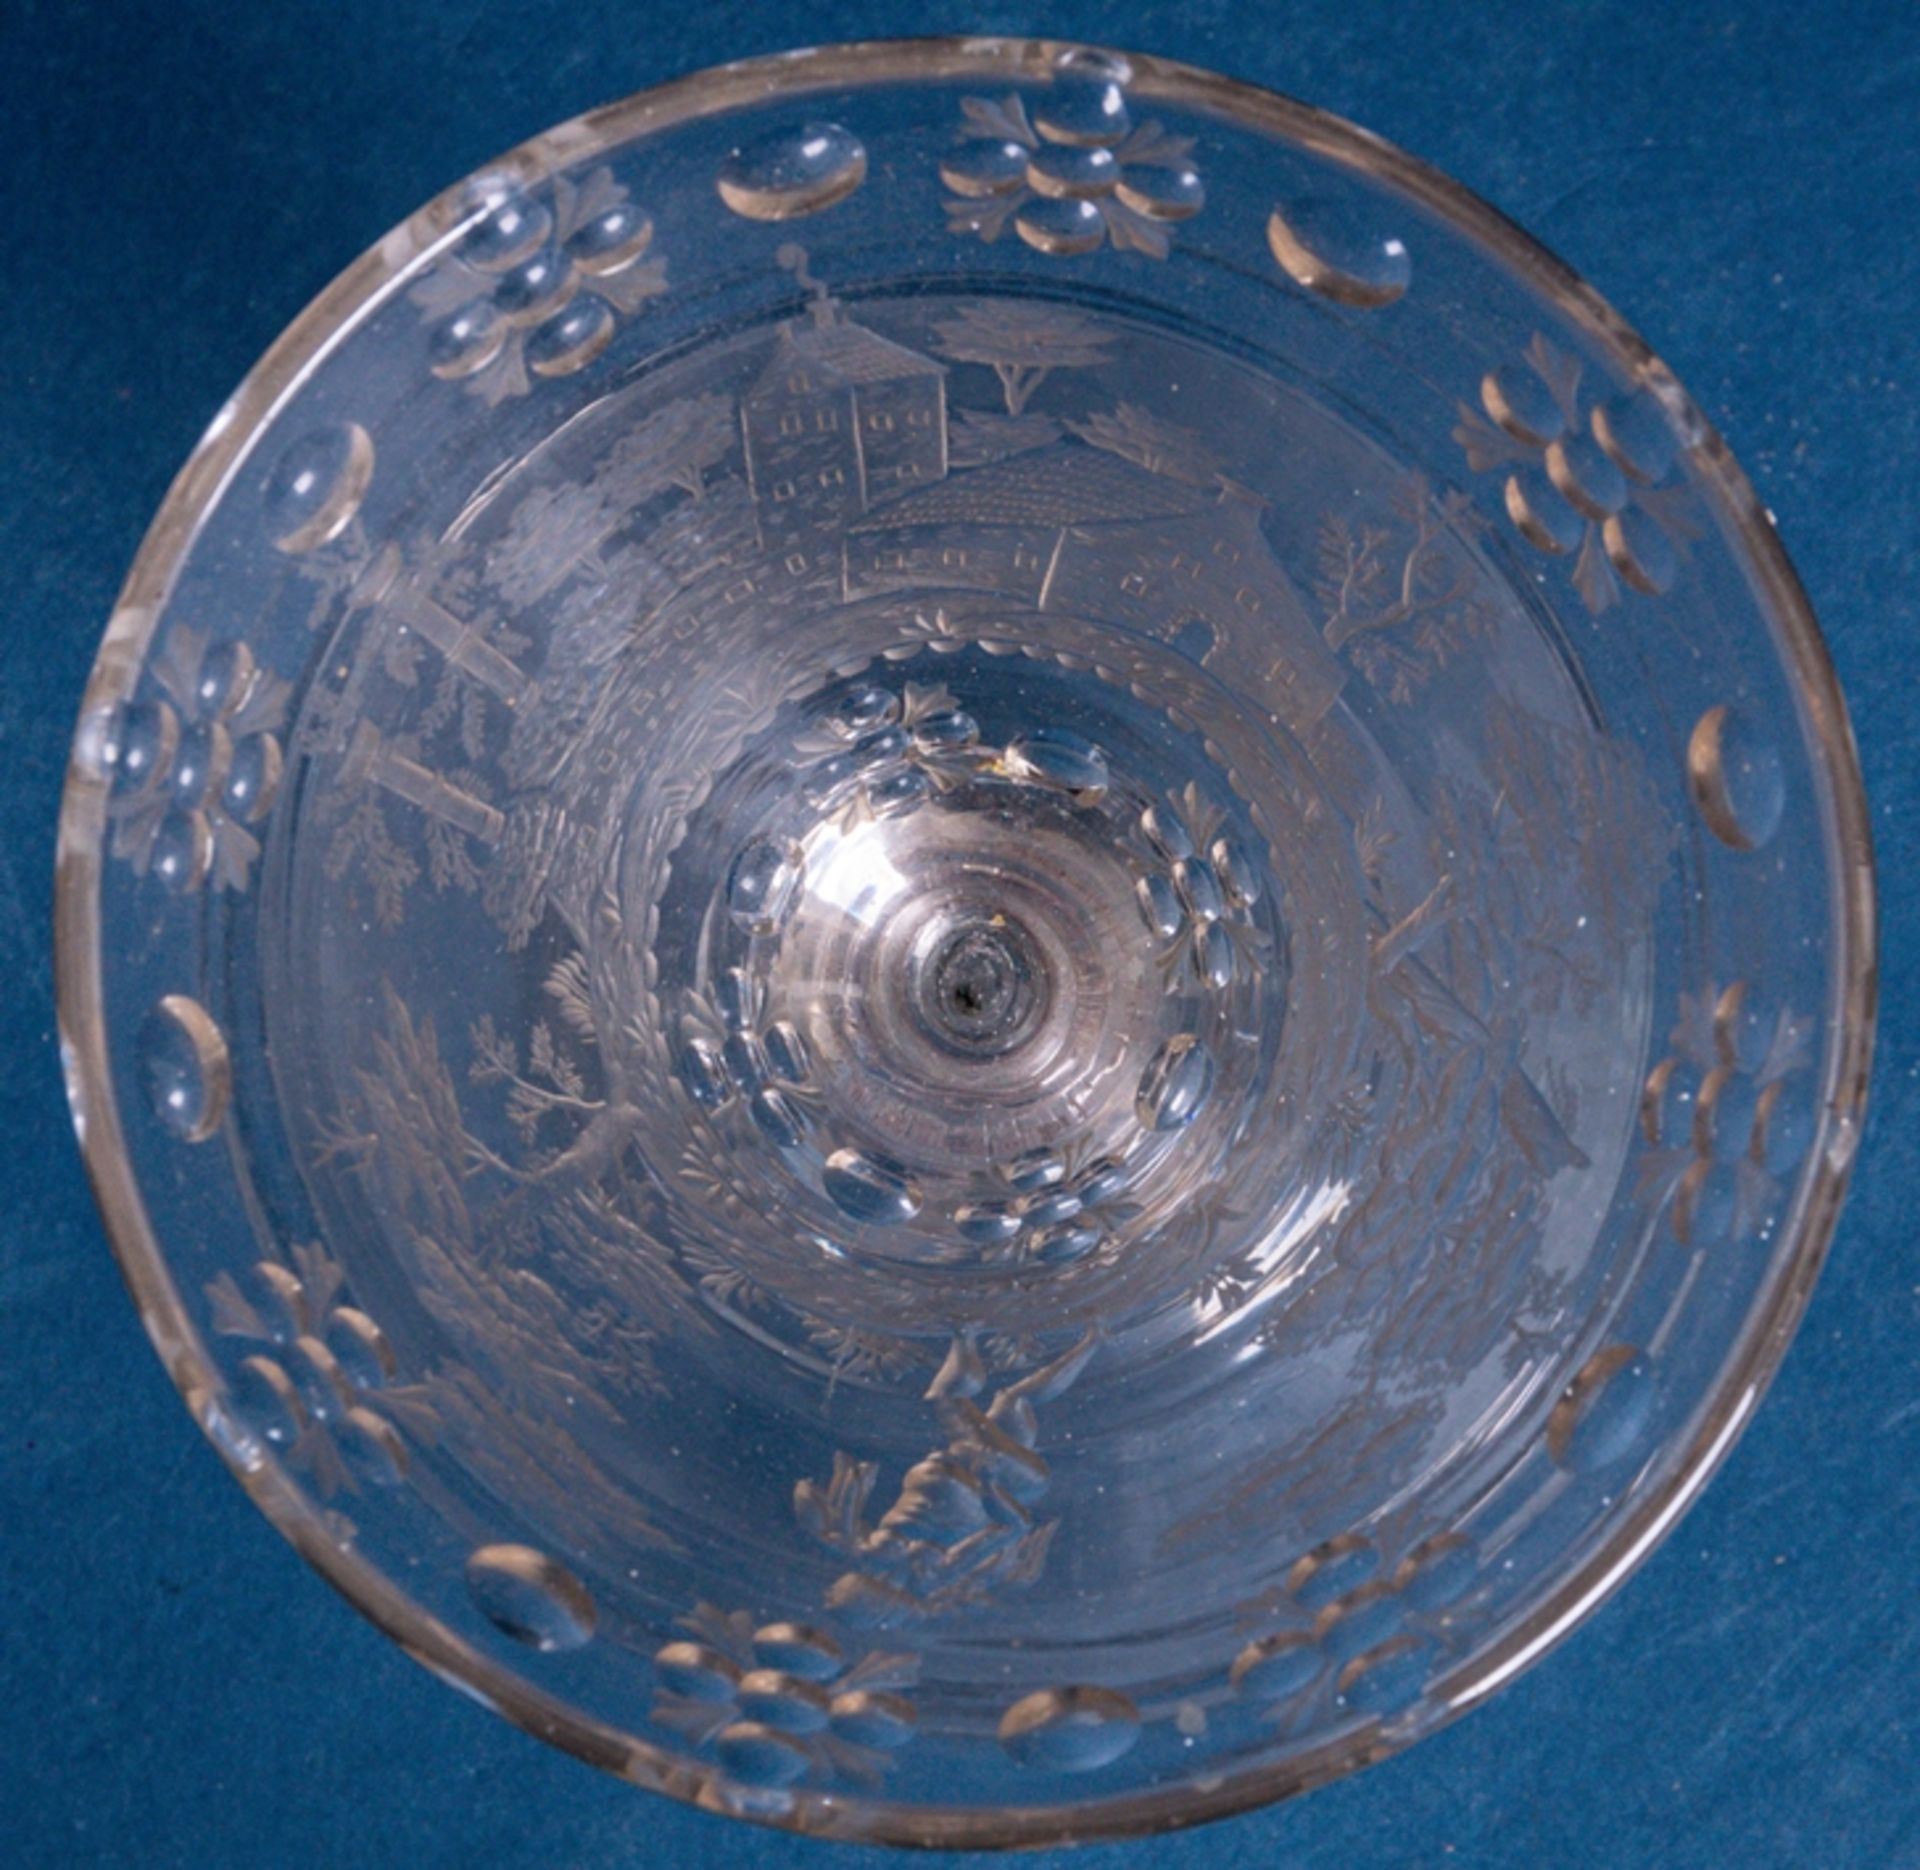 Barocker Glaspokal, 17./18. Jhd., farbloses Glas mit aufwändigen Schliffdekoren - Image 8 of 9